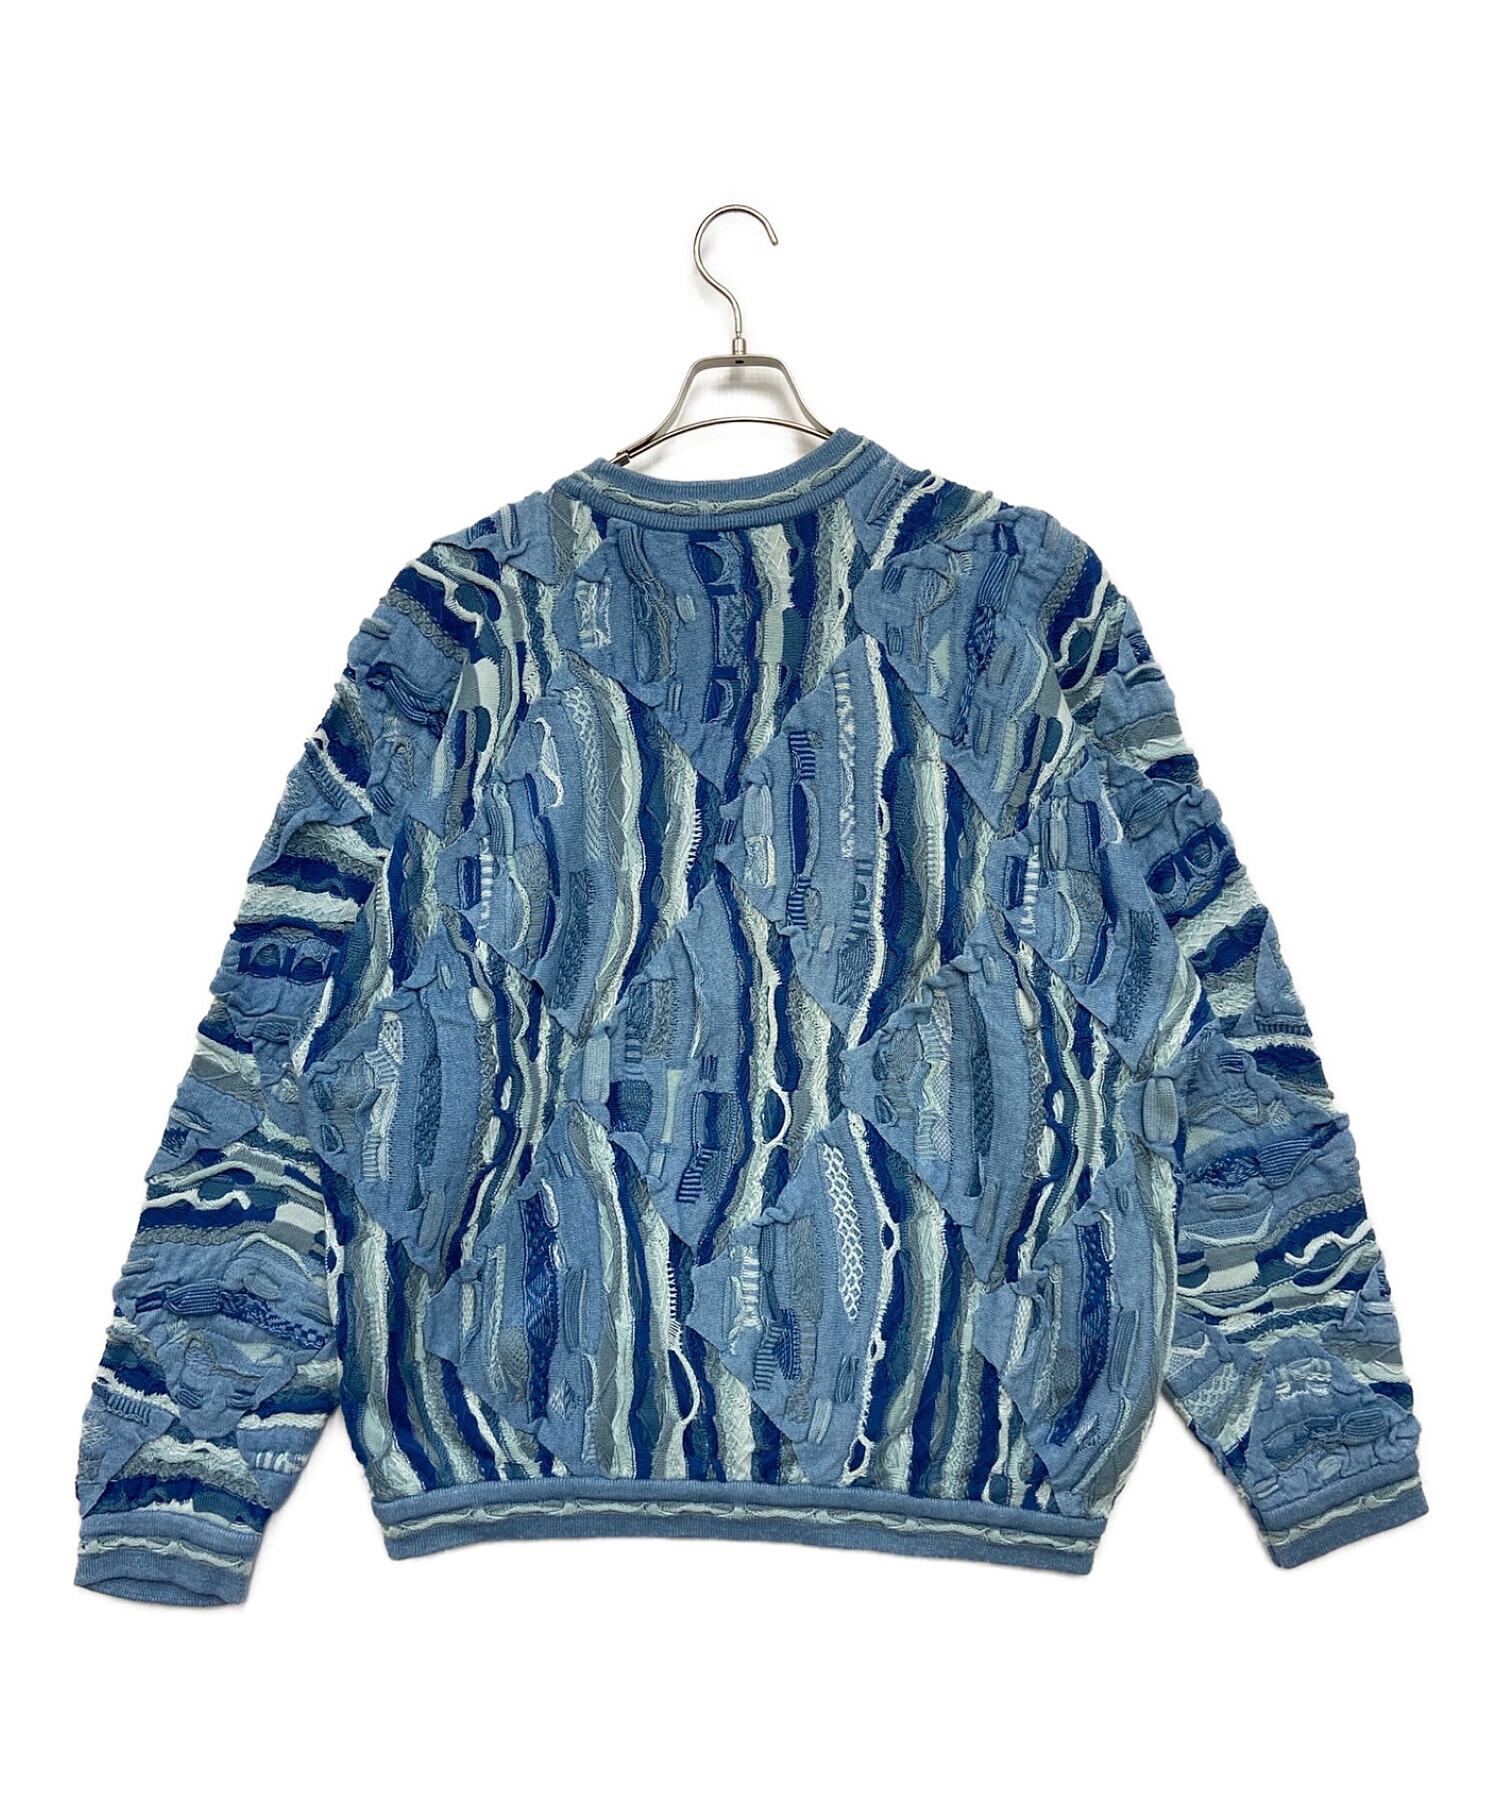 19,502円COOGI navy sweater クージー ネイビー セーター